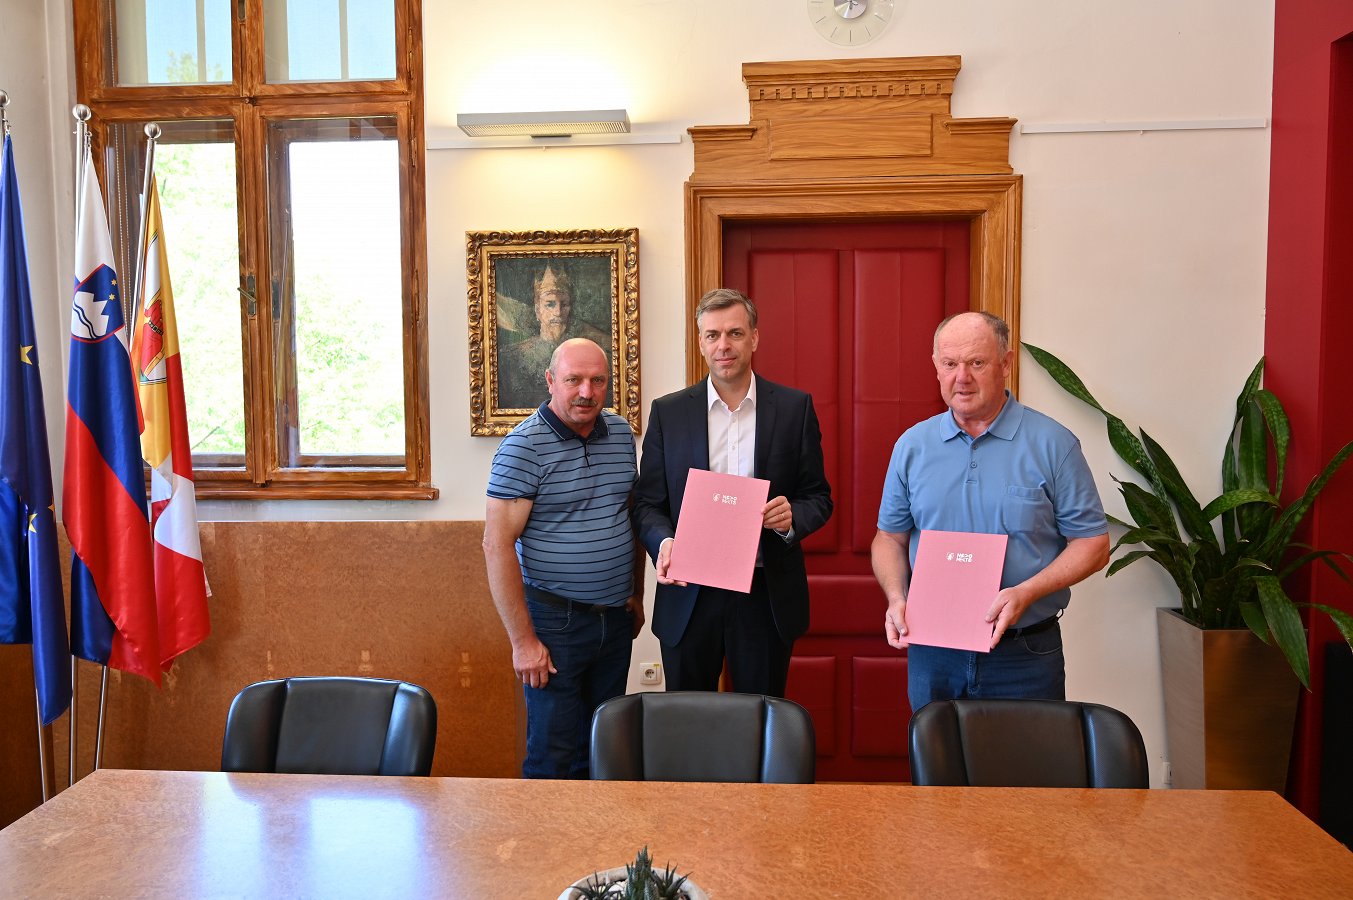 Podpisnika pogodbe župan MONM in Marjan Skube v družbi predsednika KS Stopiče Janeza Murna